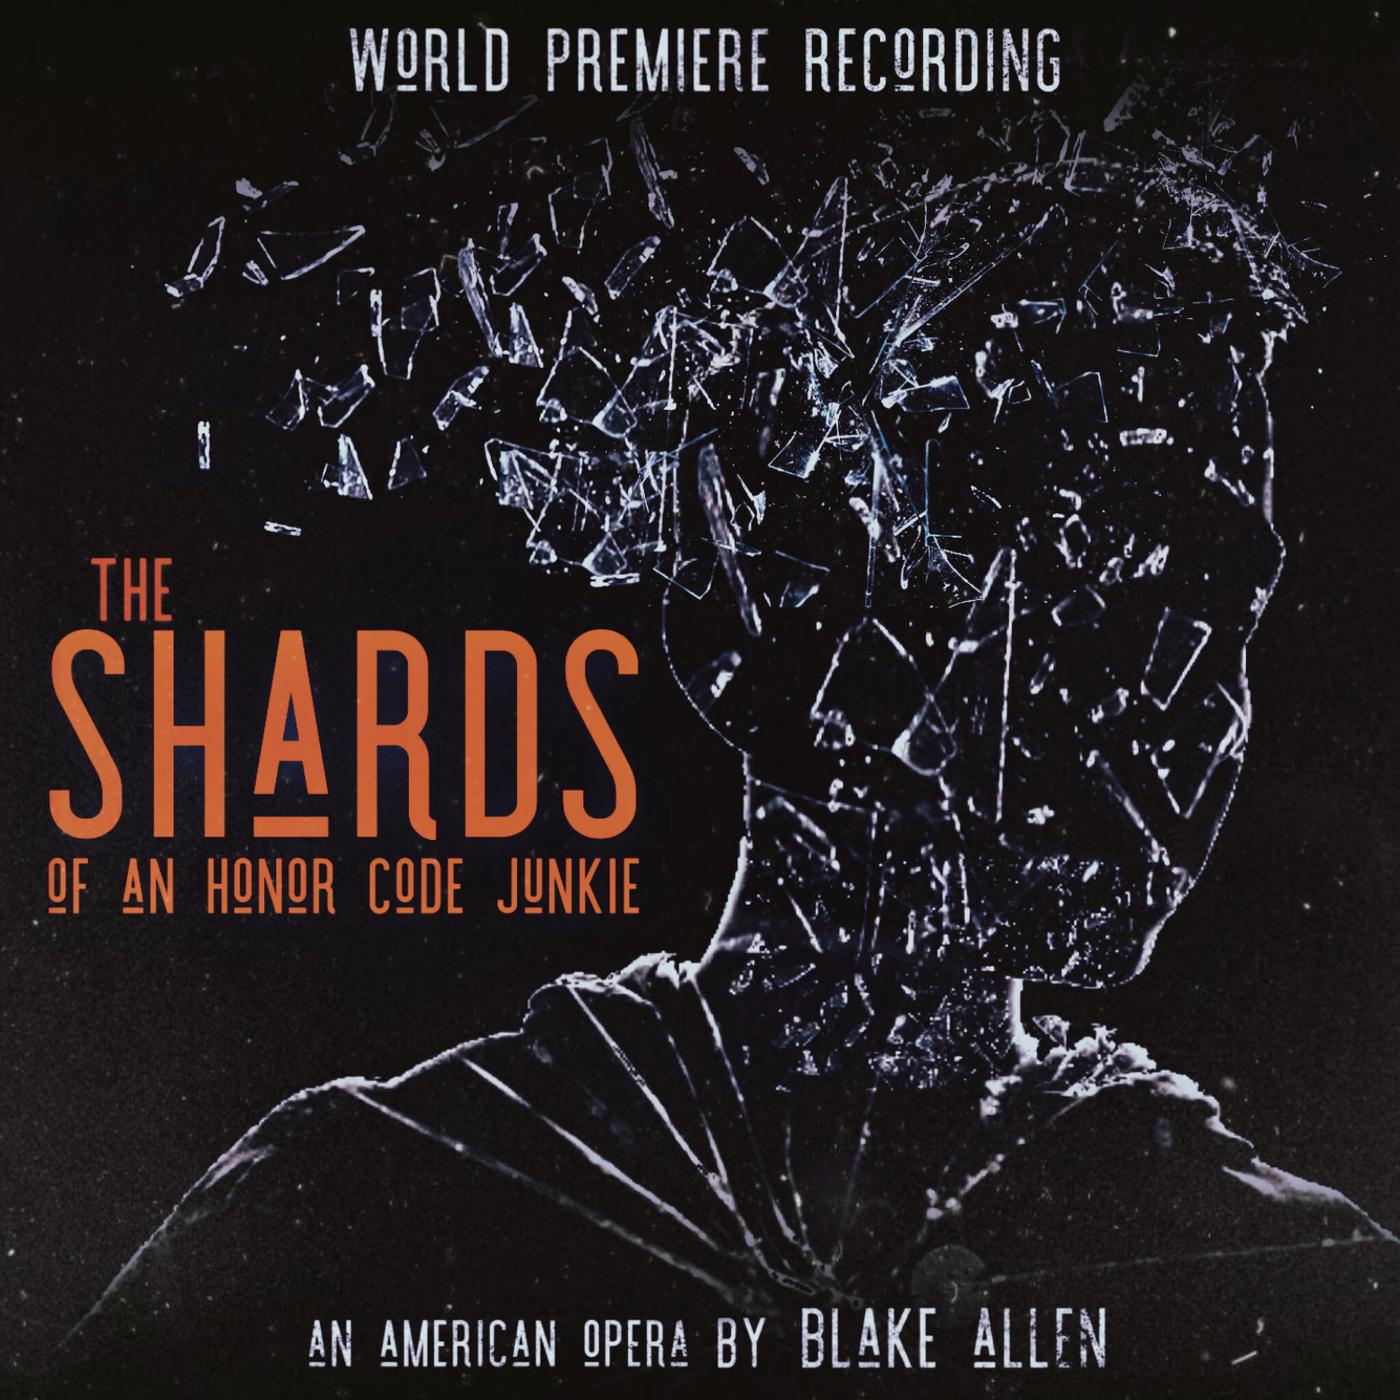 Blake Allen - The Drawer